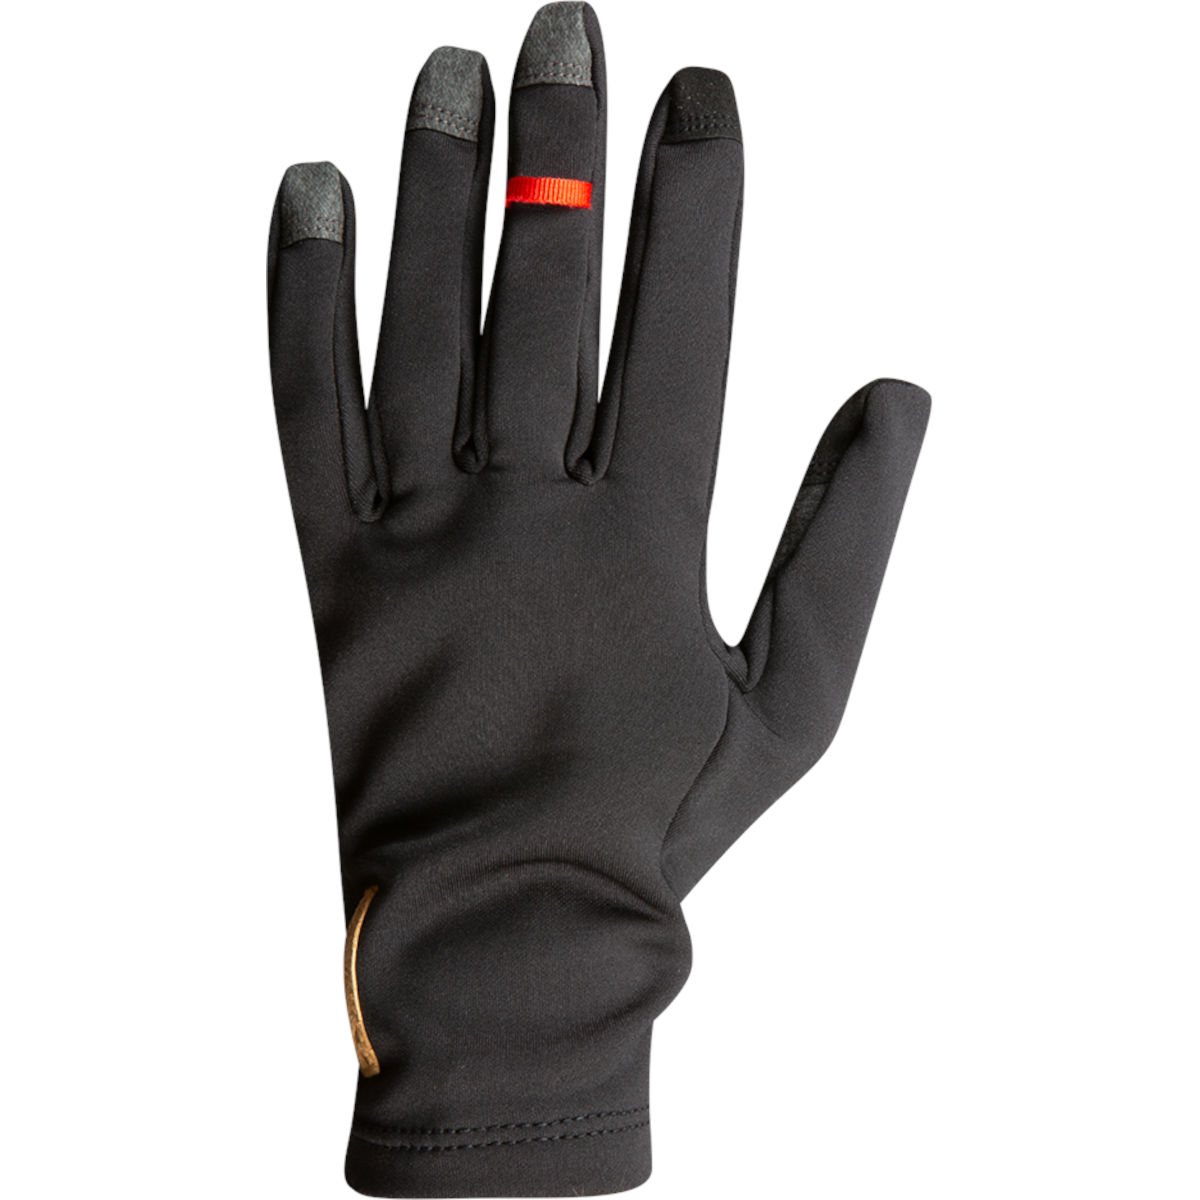 Produktbild von PEARL iZUMi Thermal Handschuhe 14142008 - schwarz - 021